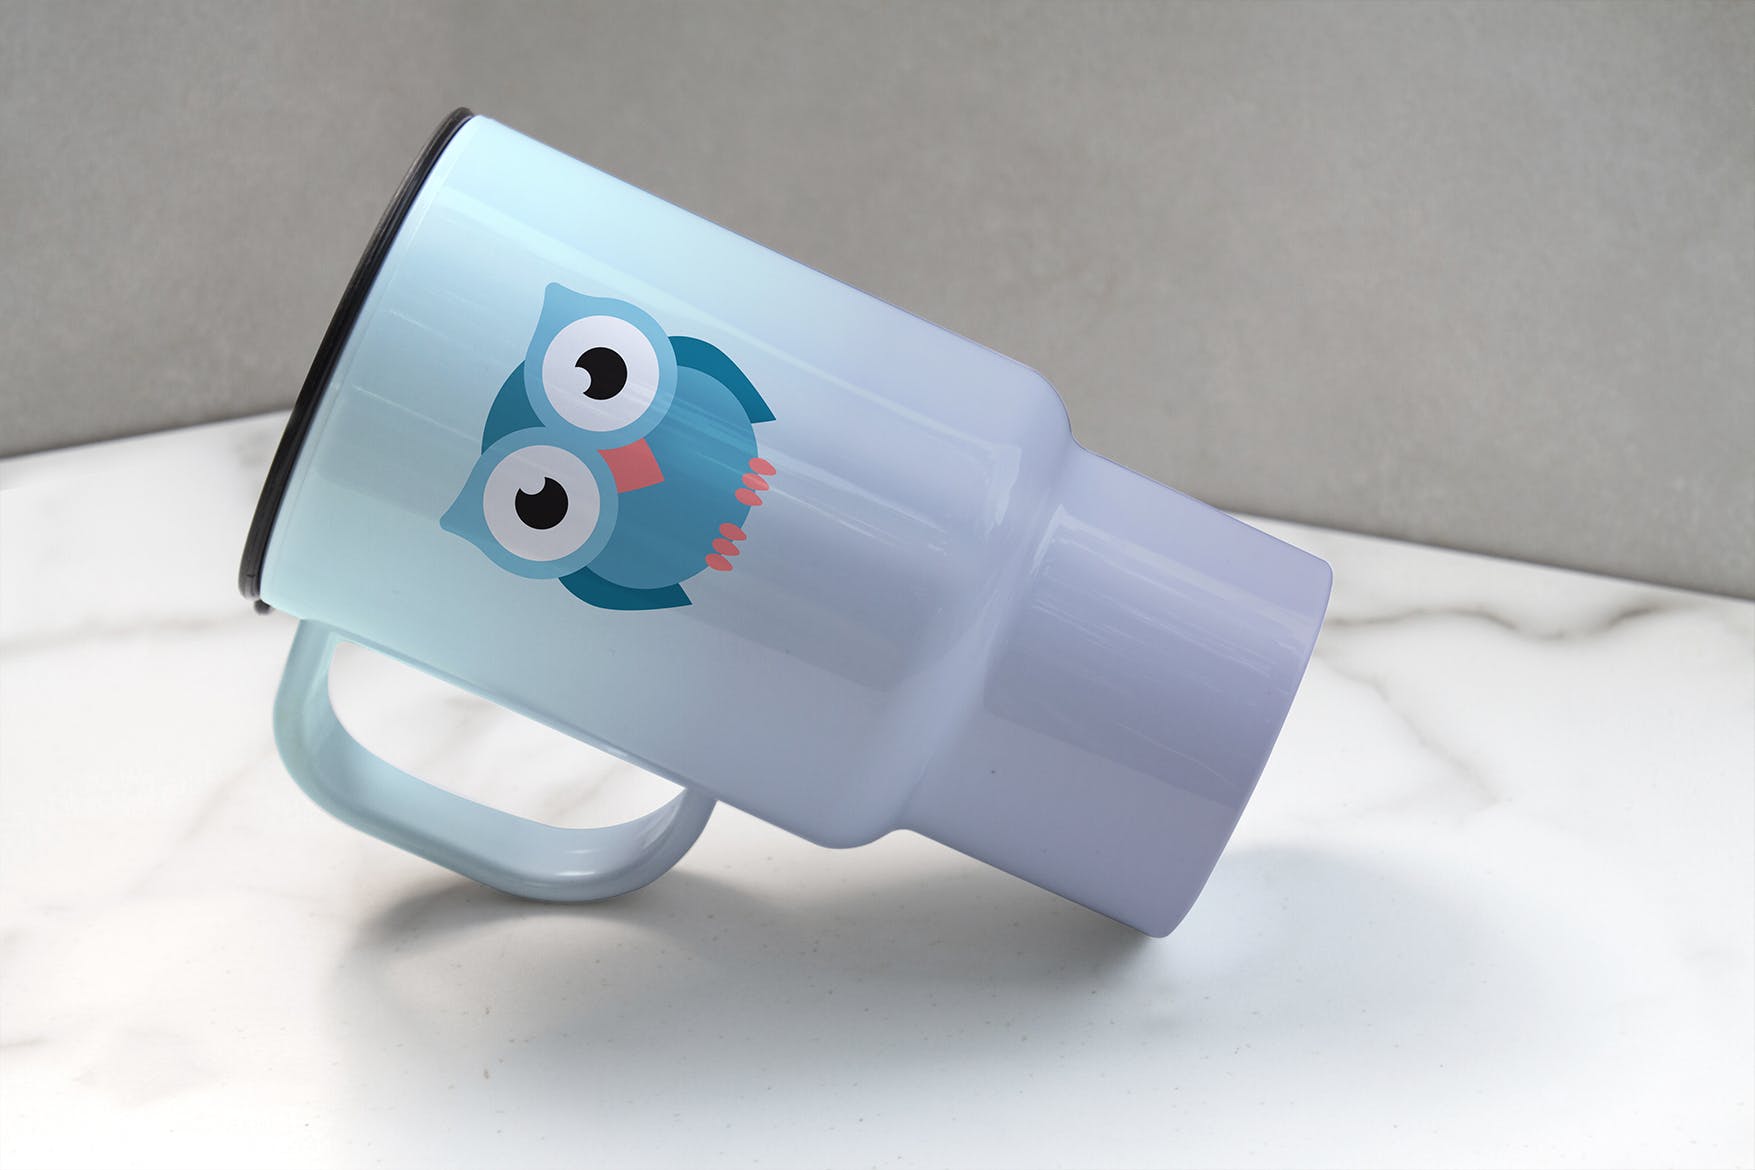 便携式杯子图案设计预览蚂蚁素材精选 Portable Cup Mockup插图